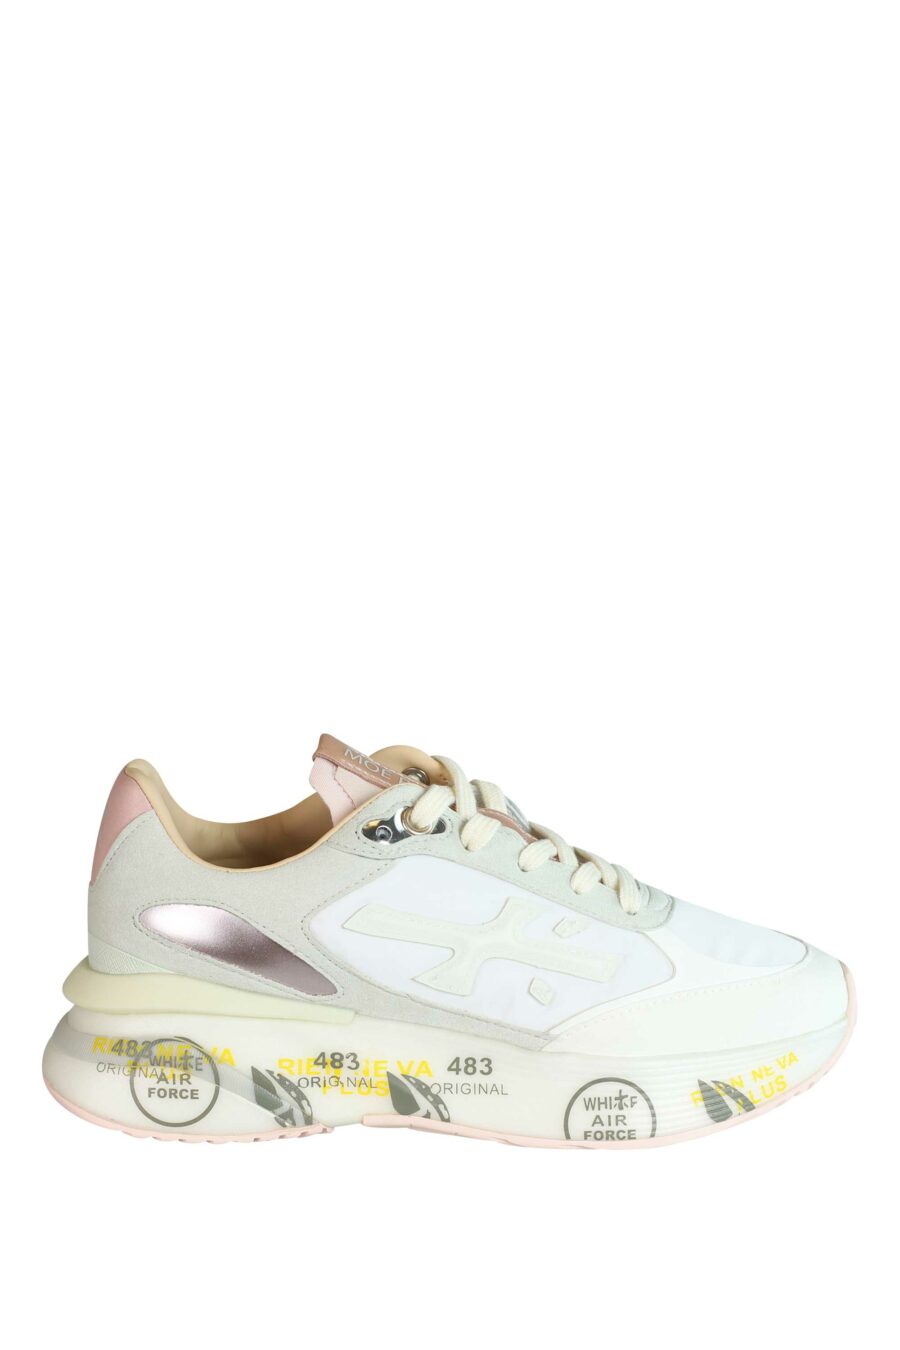 Zapatillas blancas con rosa y gris "moe run-d 6338" - 8058326253473